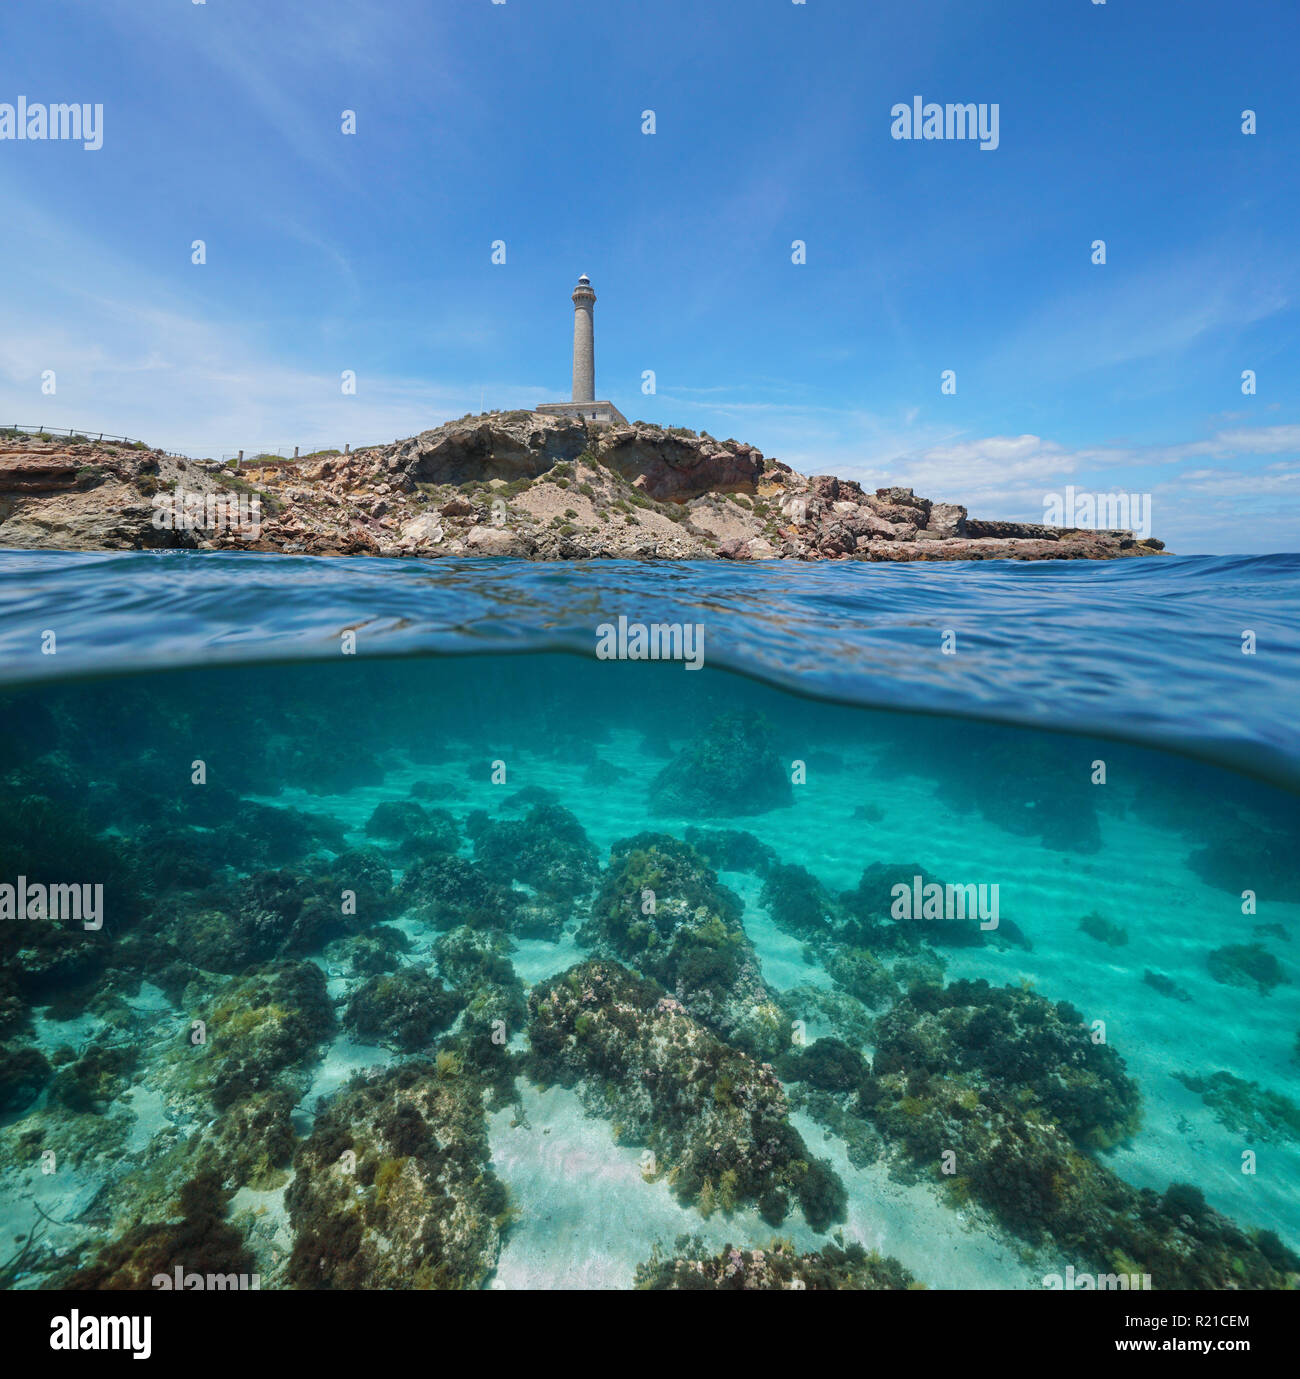 Felsige Küste mit einem Leuchtturm und Felsen mit Sand Unterwasser, geteilte Ansicht Hälfte oberhalb und unterhalb der Oberfläche, Mittelmeer, Cabo de Palos, Spanien Stockfoto